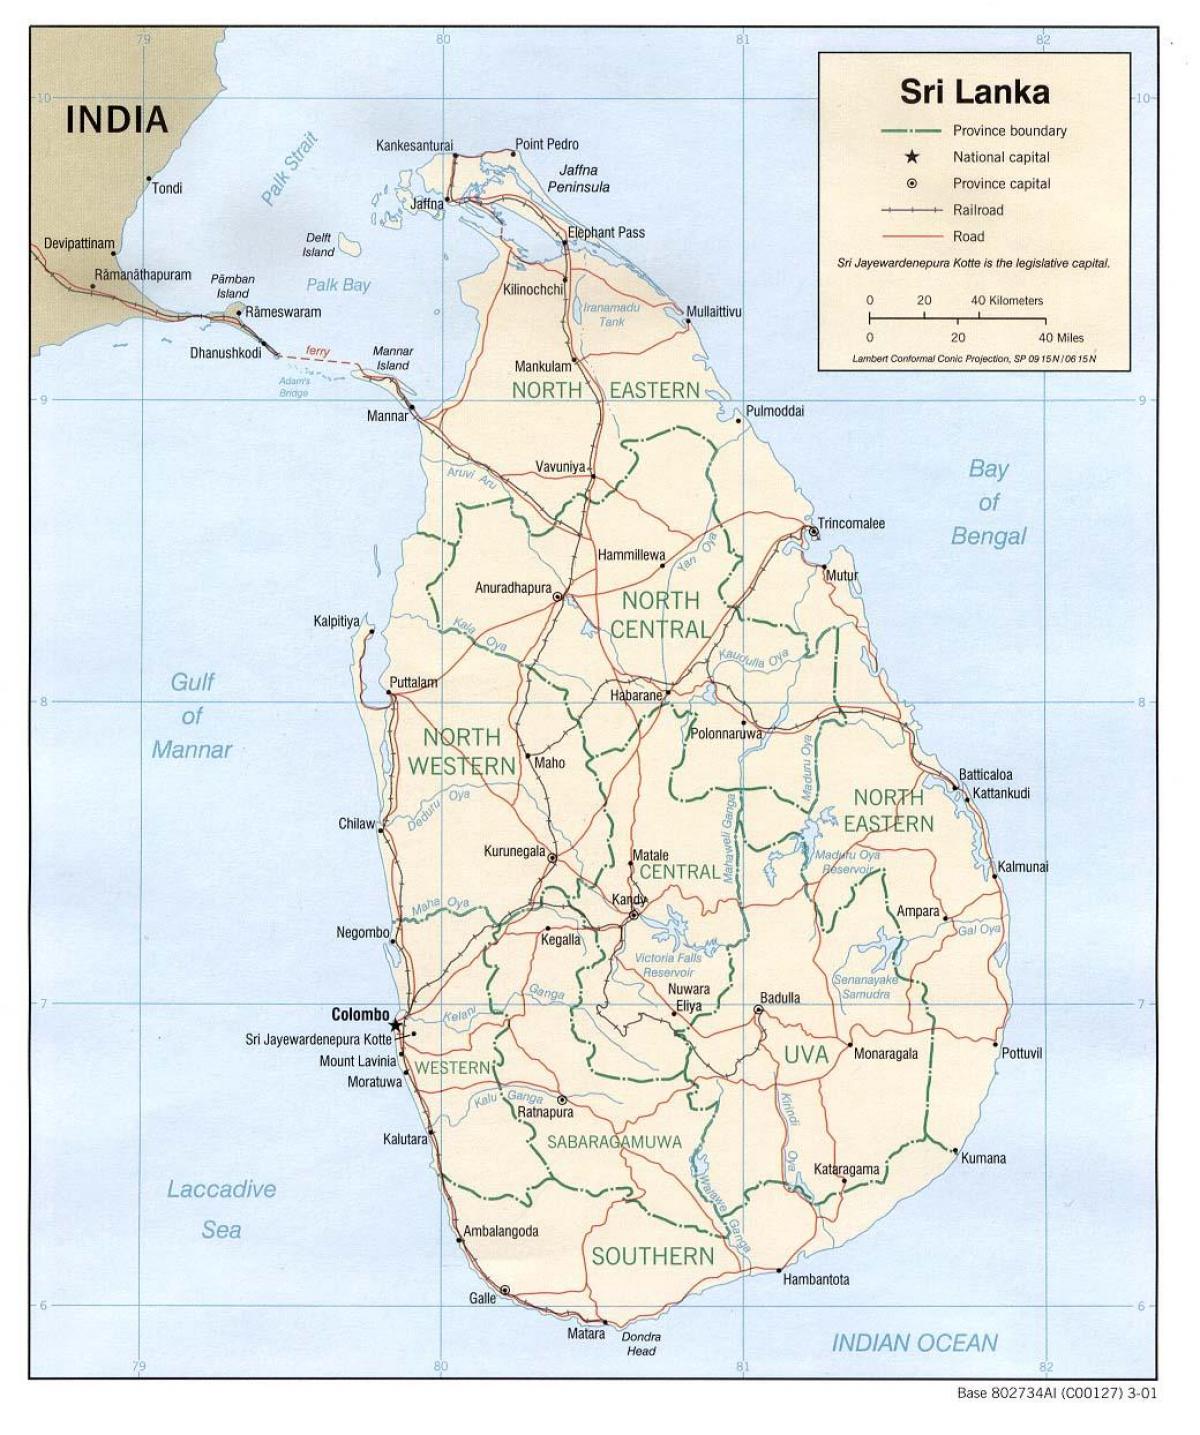 Sri Lanka bus kort